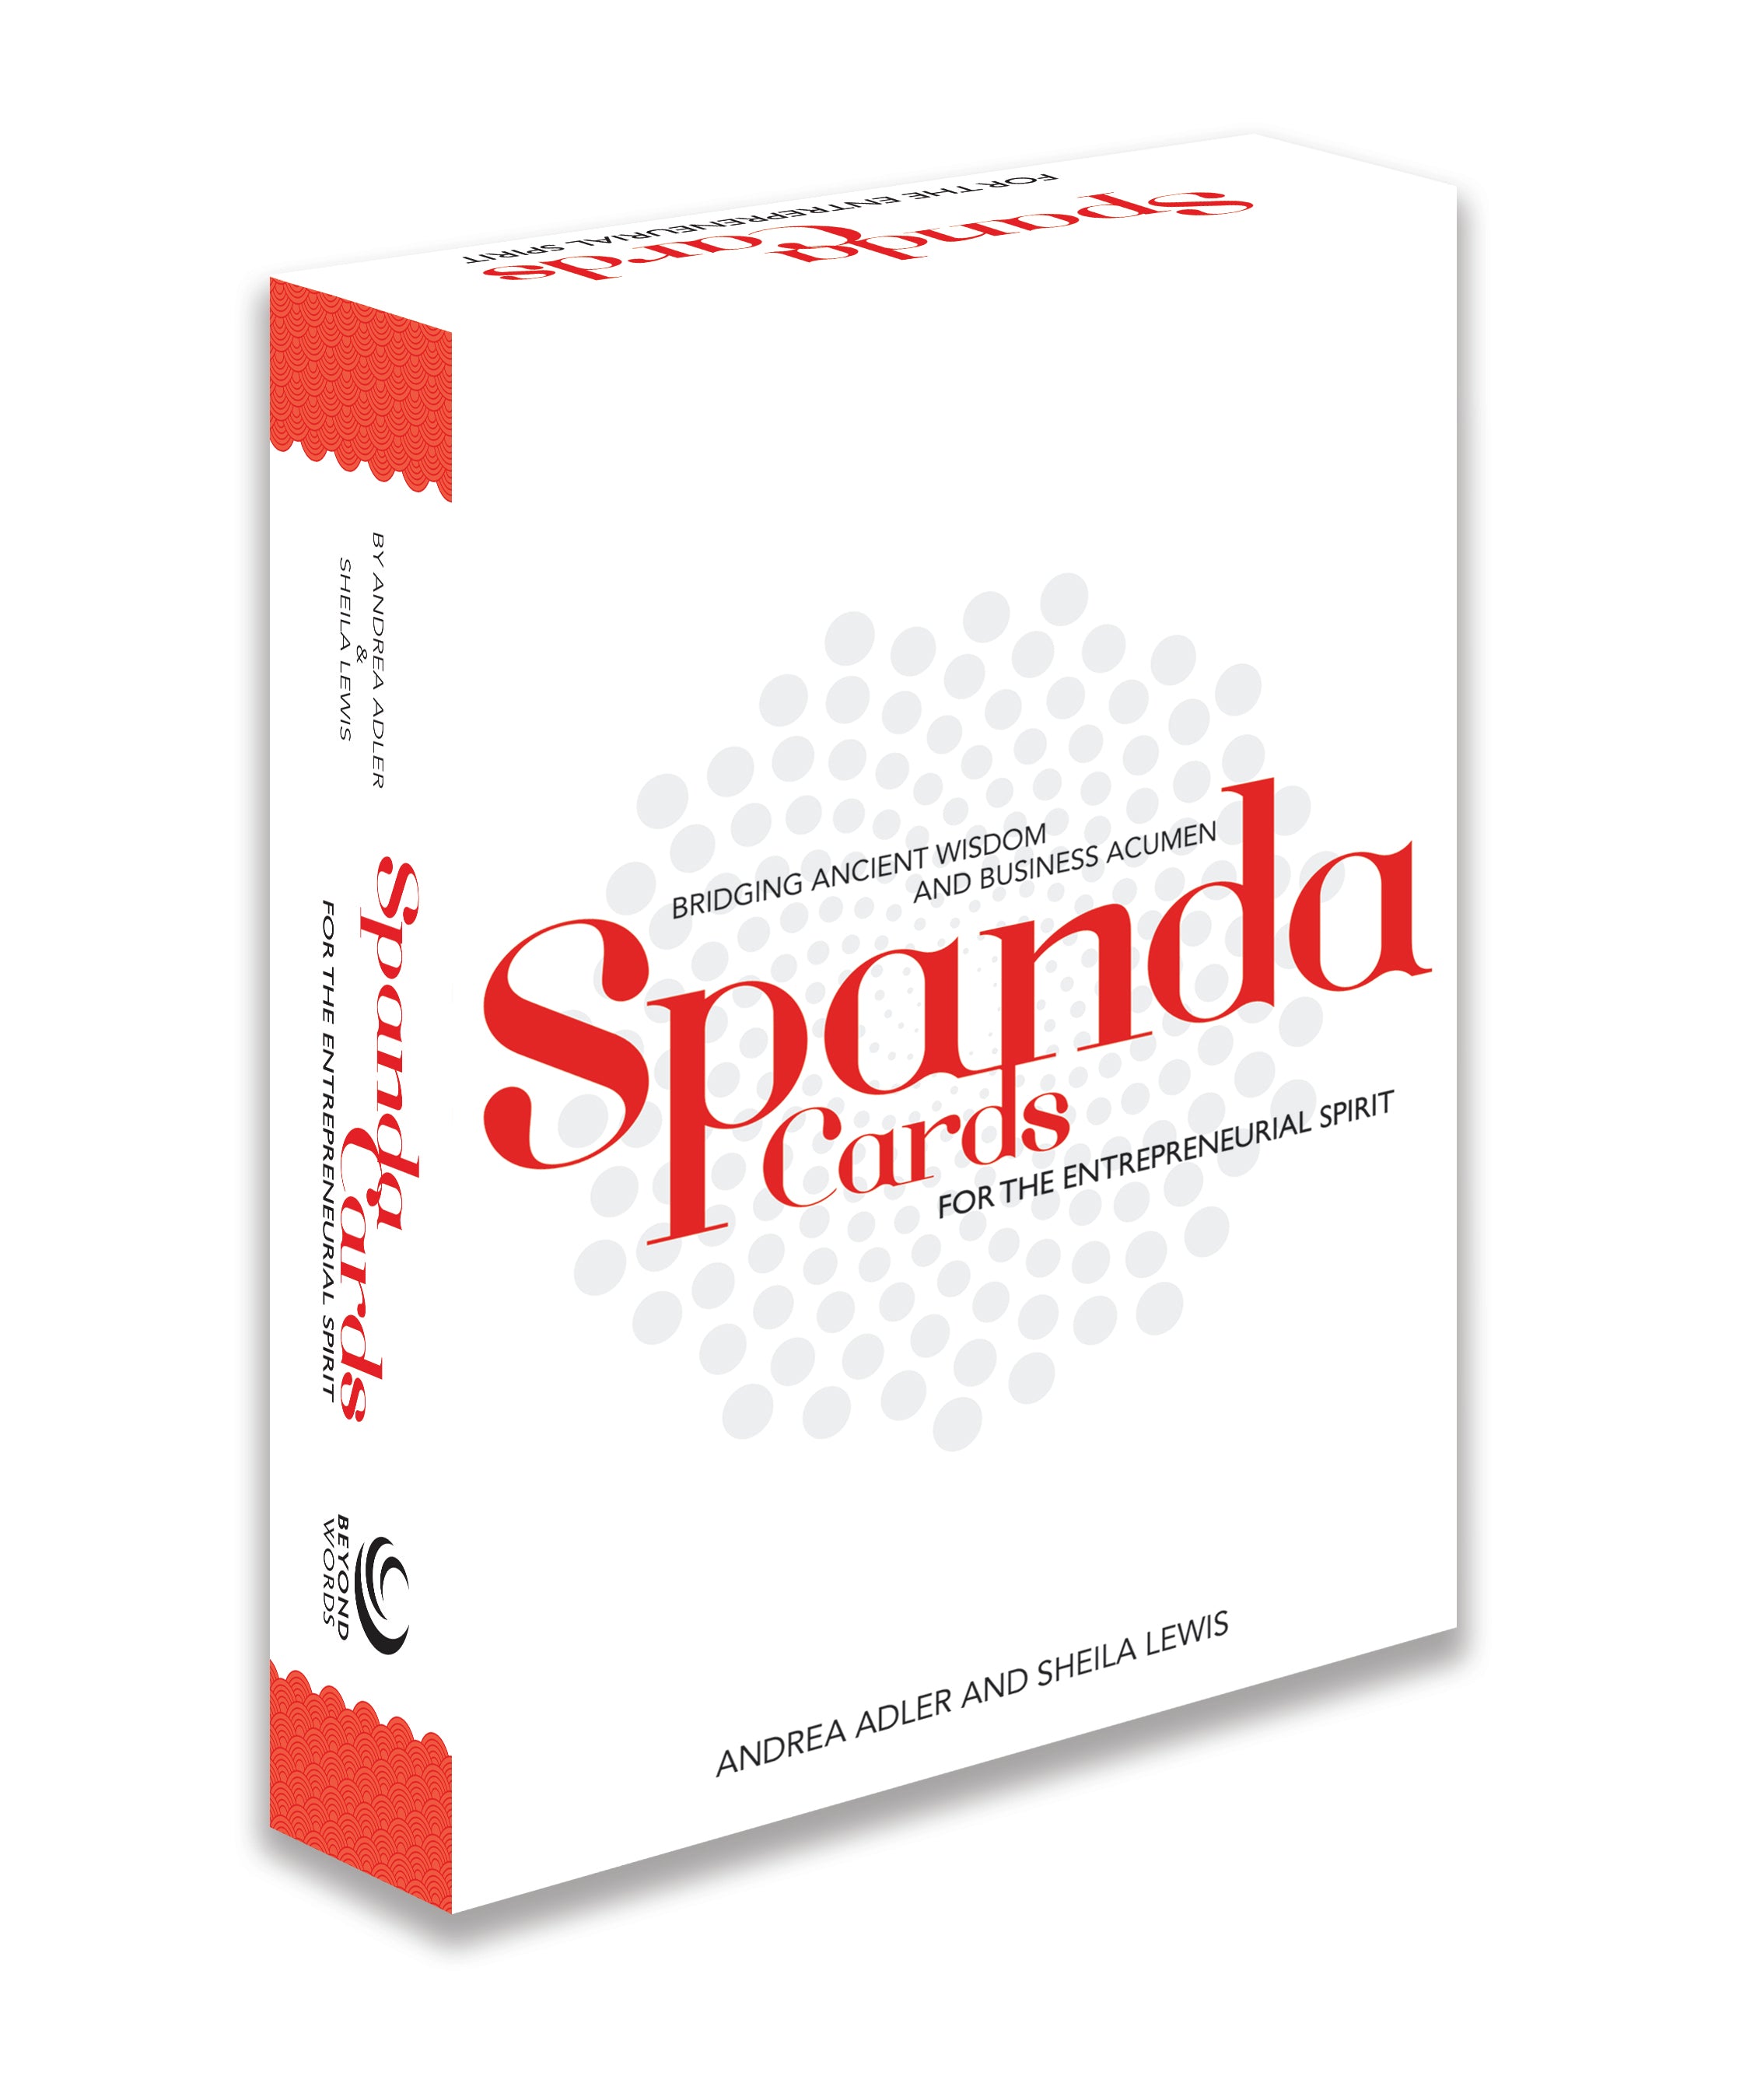 Spanda Cards for the Entrepreneurial Spirit